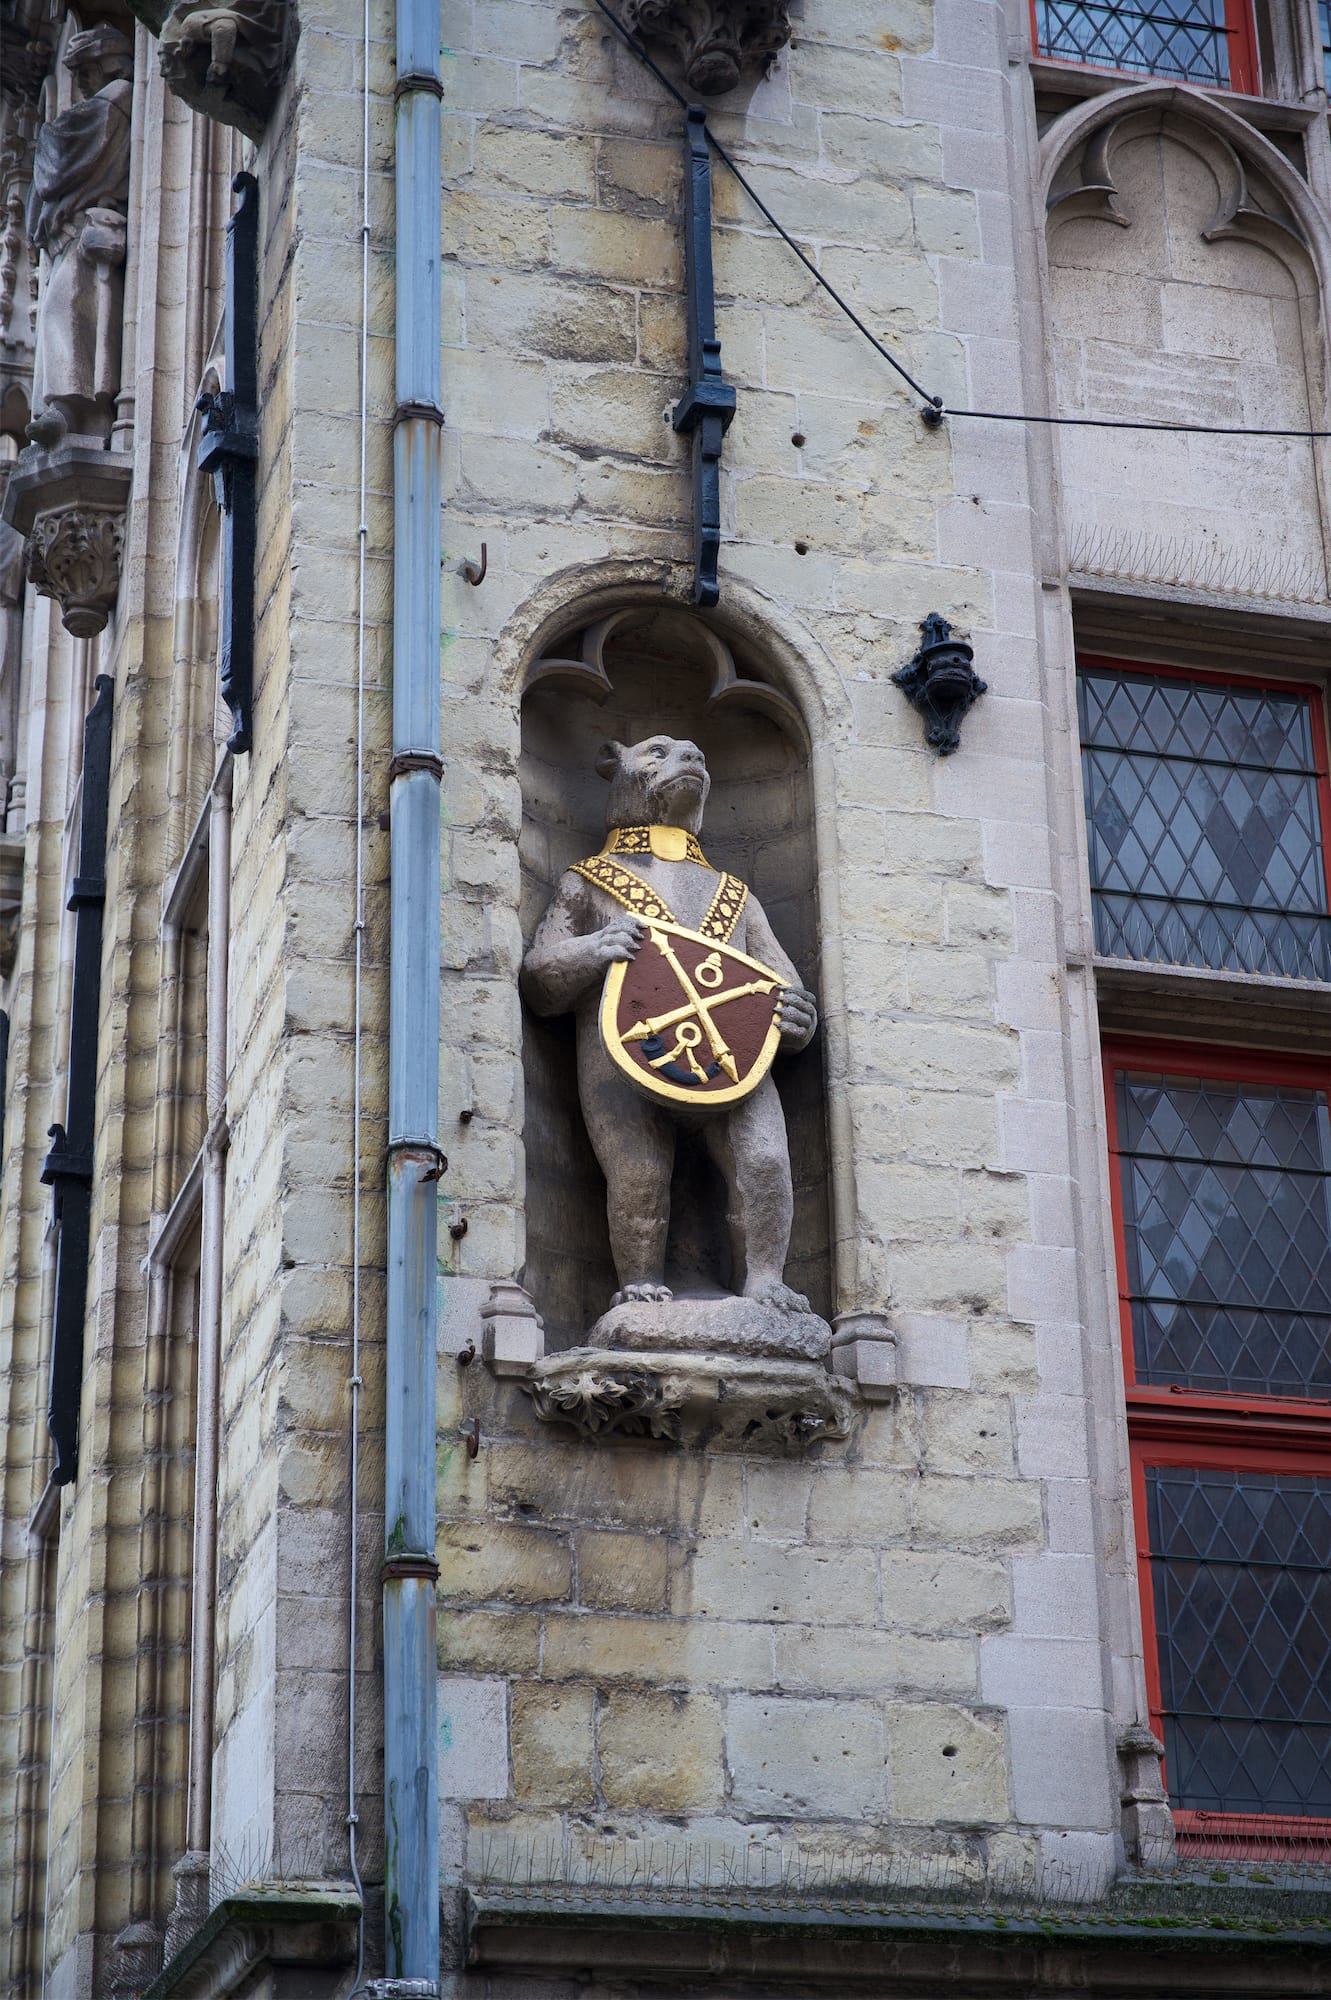 Bruges: la piccola Venezia del Belgio